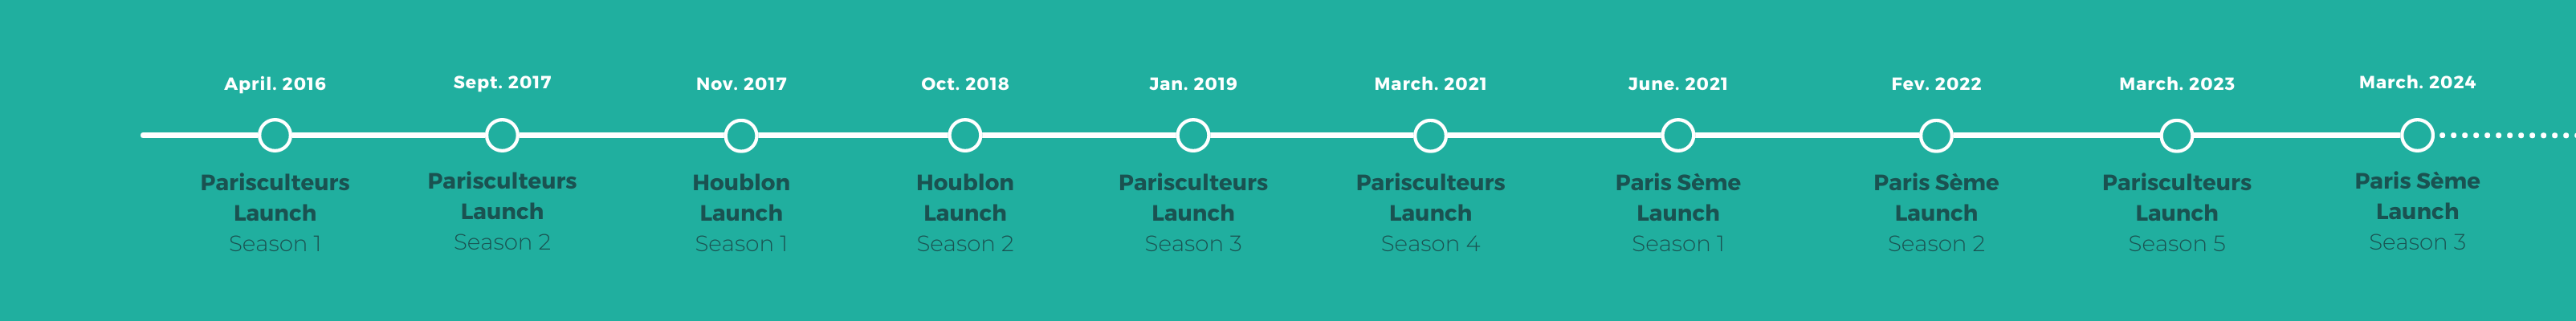 Parisculteurs Timeline